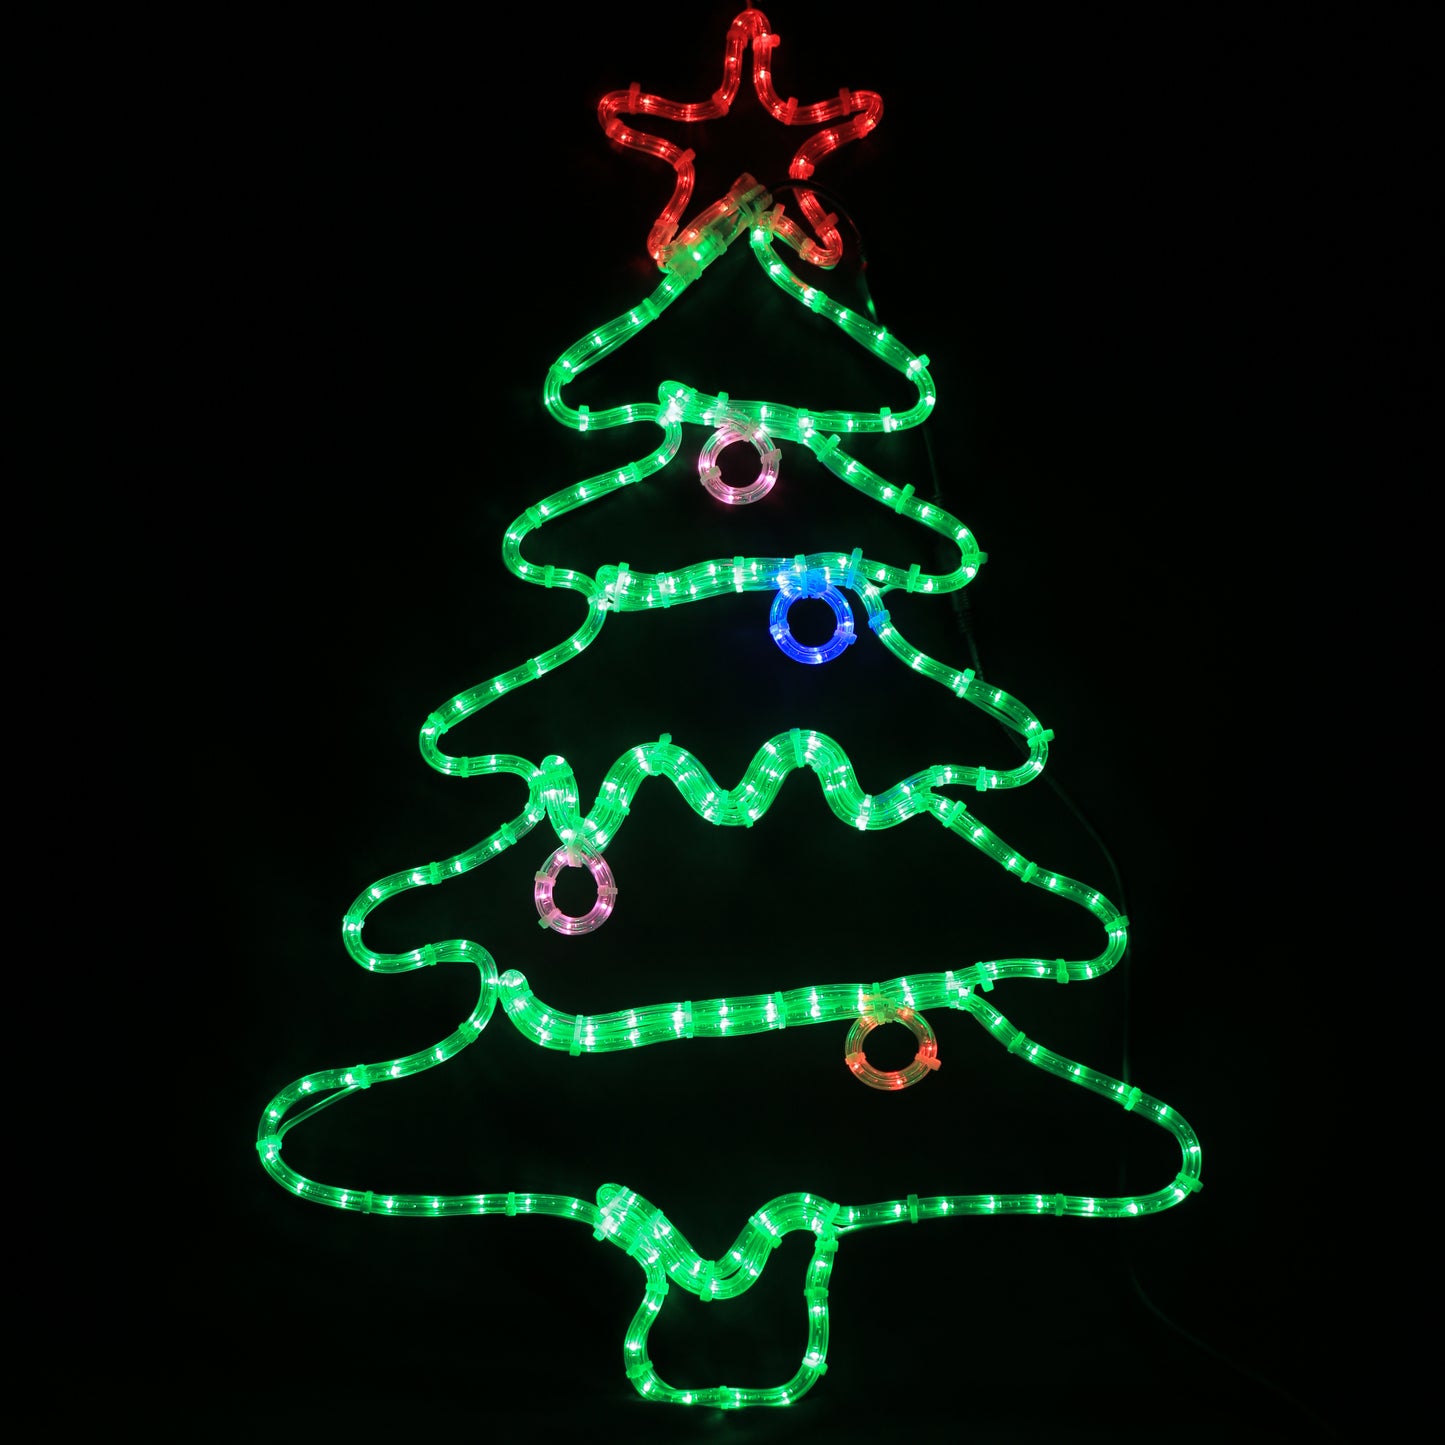 Weihnachtslicht – LED-Weihnachtsbaum – 57 x 90 cm